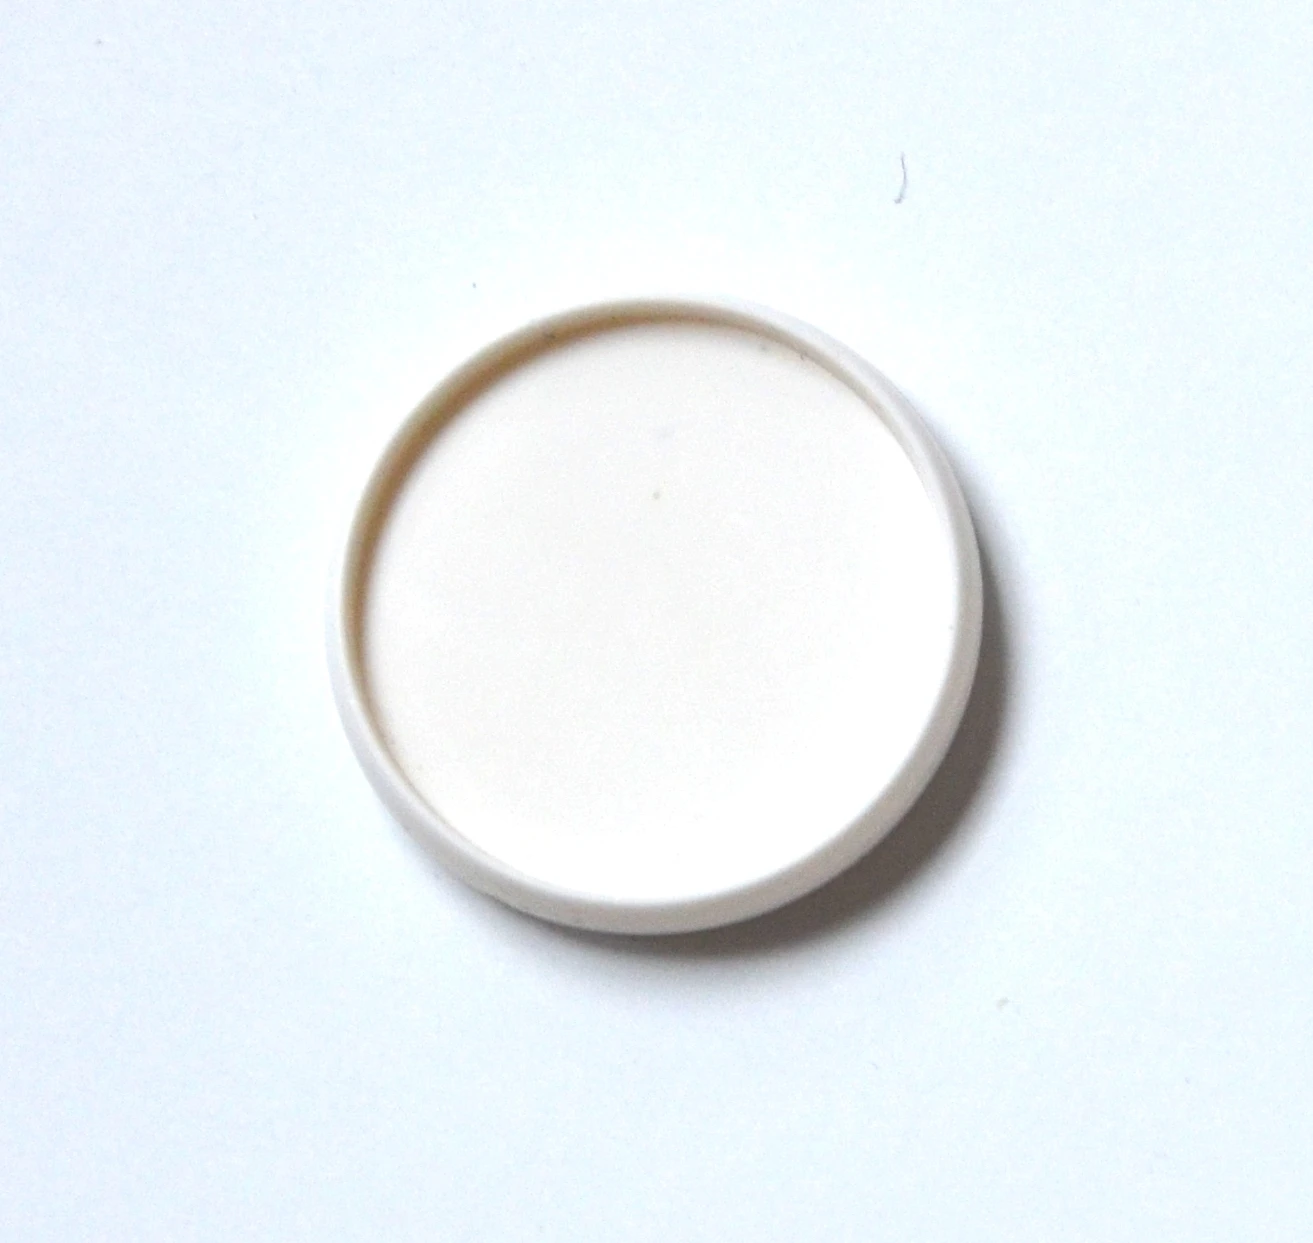 35 мм 30 шт./лот рыхлый Пластиковый переплет кольцо вкладыш цветной офис хранения переплет кольцо диск цвет гриб отверстие A4 переплет - Цвет: White